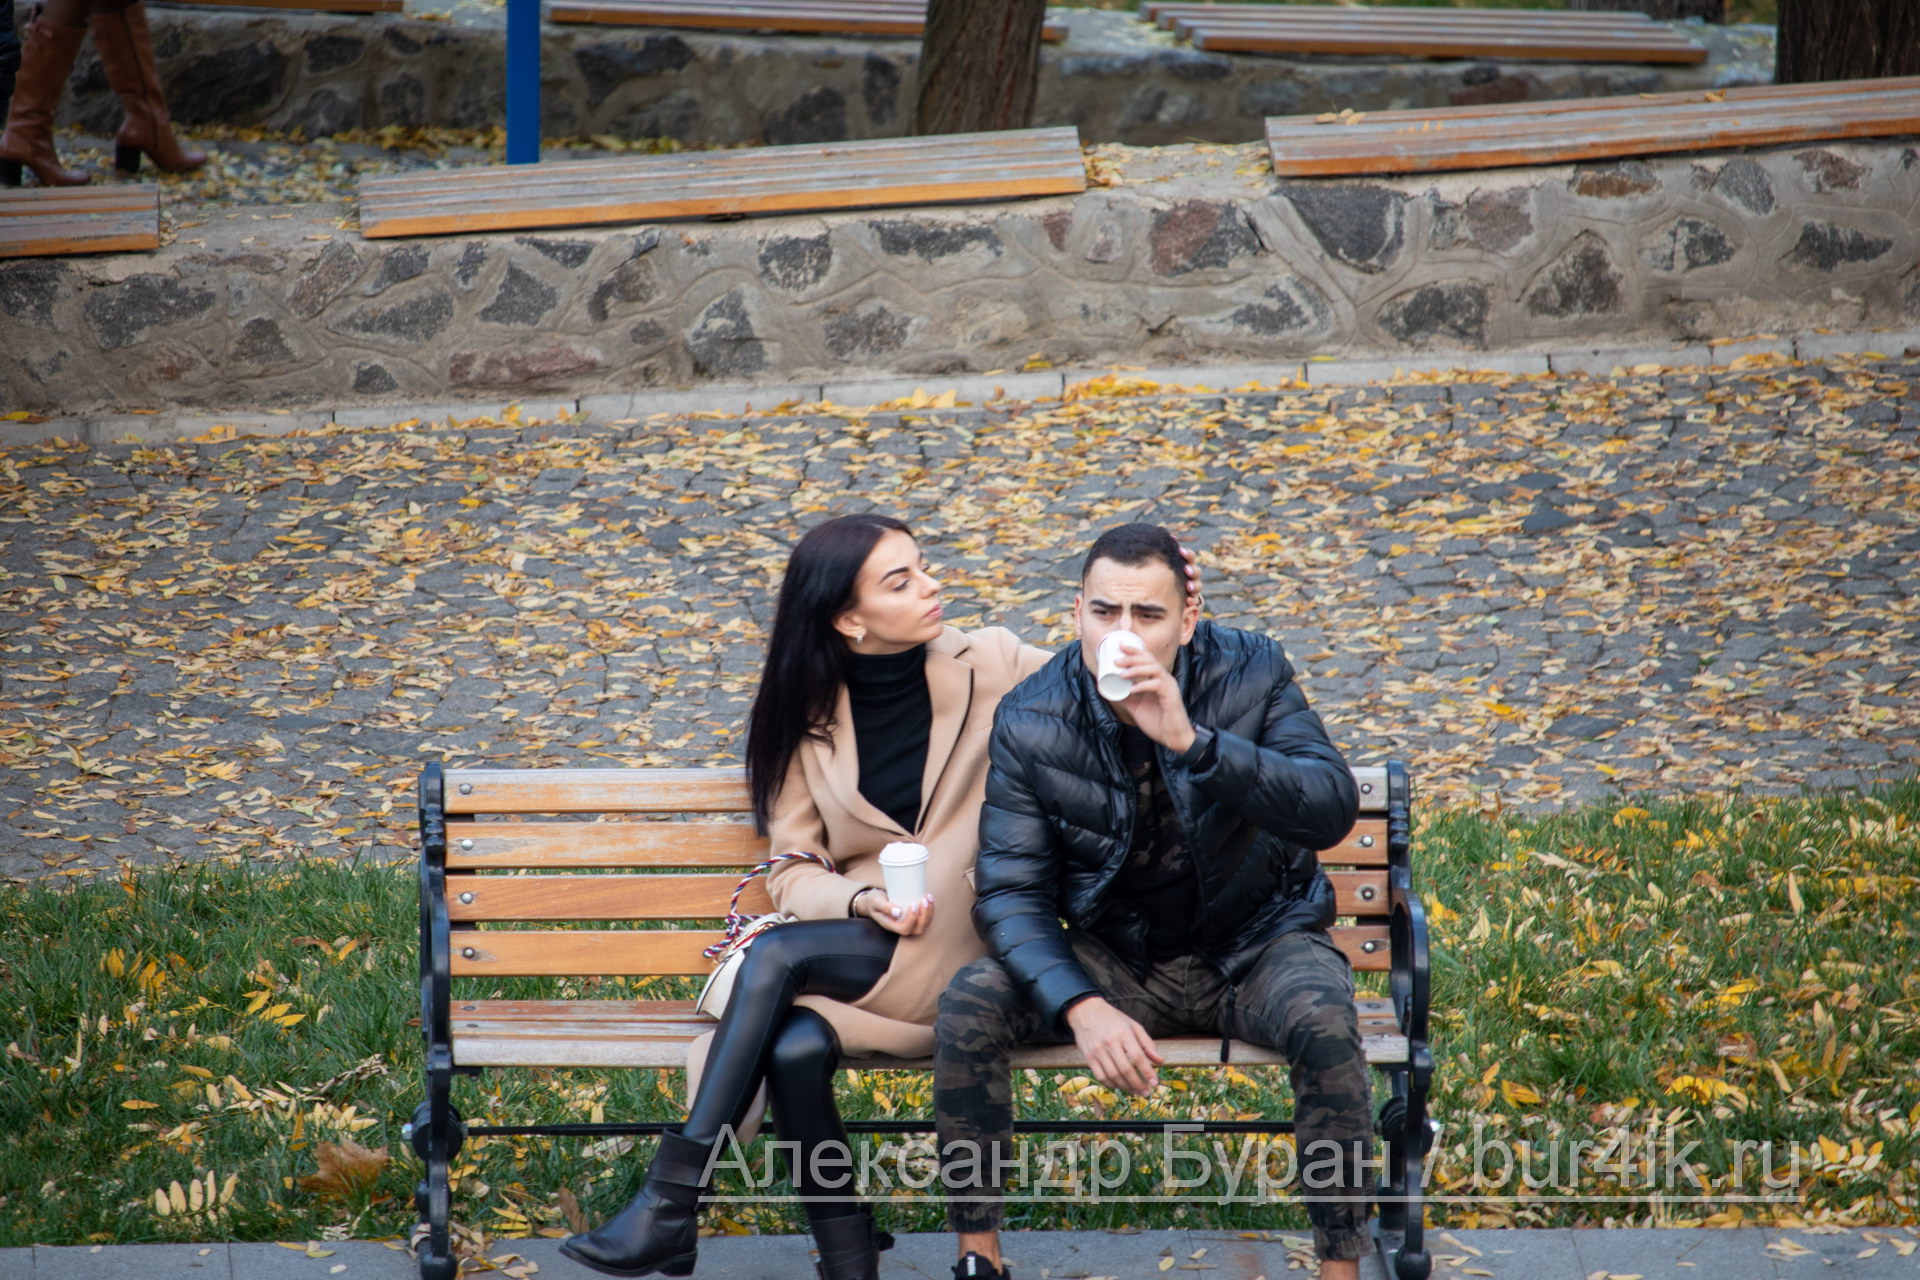 Девушка и парень пьют кофе из одноразовых стаканчиков на скамейке в парке осенью - Украина, Одесса, 09,11,2019